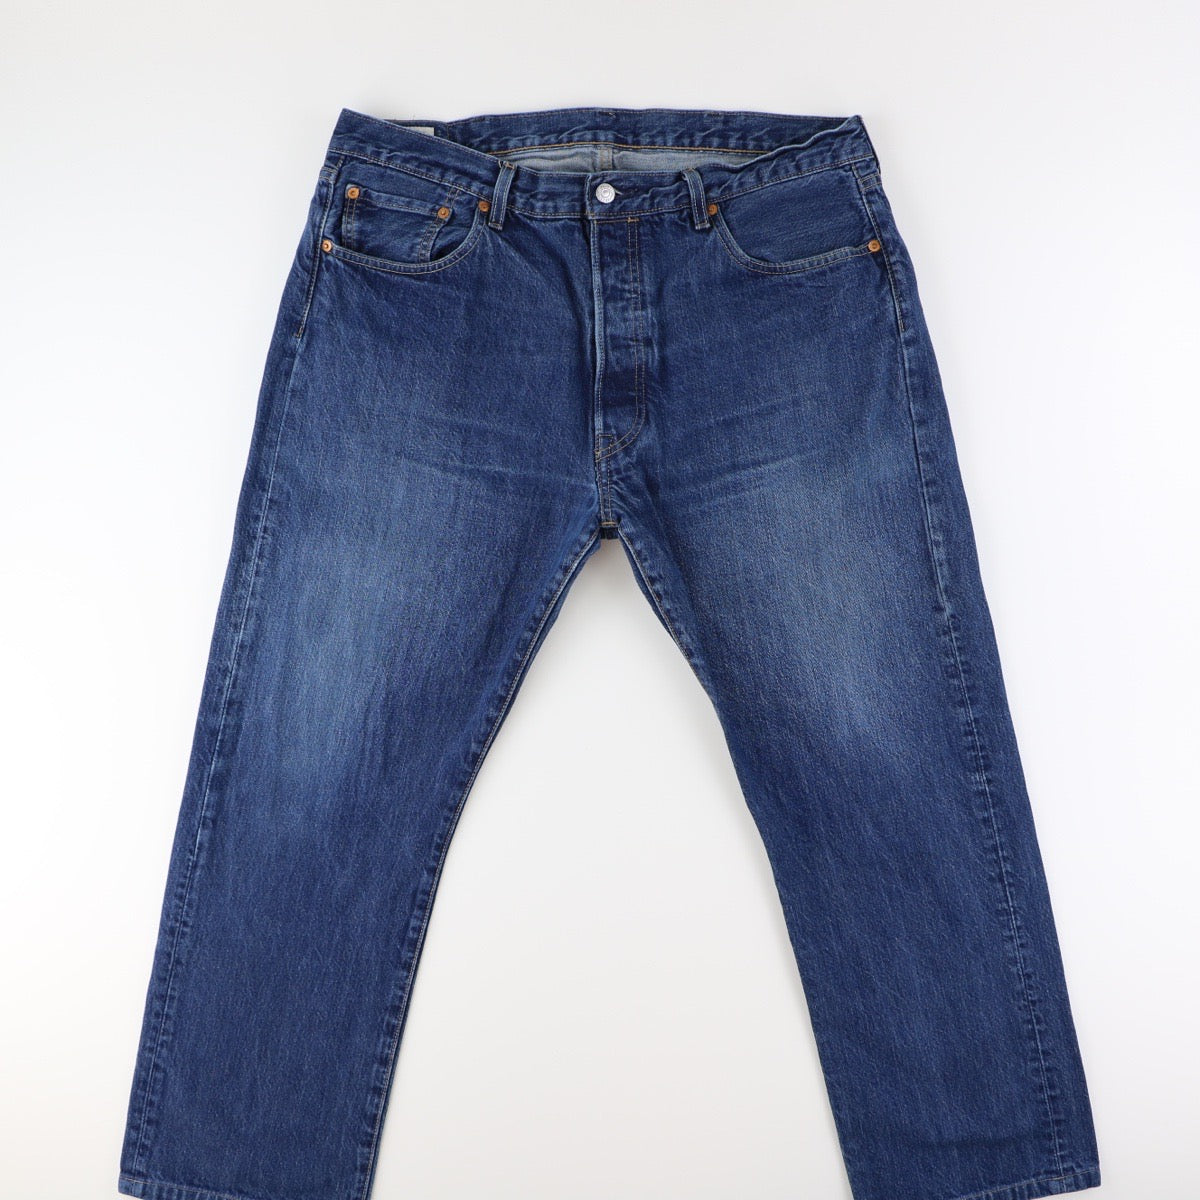 Levis 501 Jeans (38)